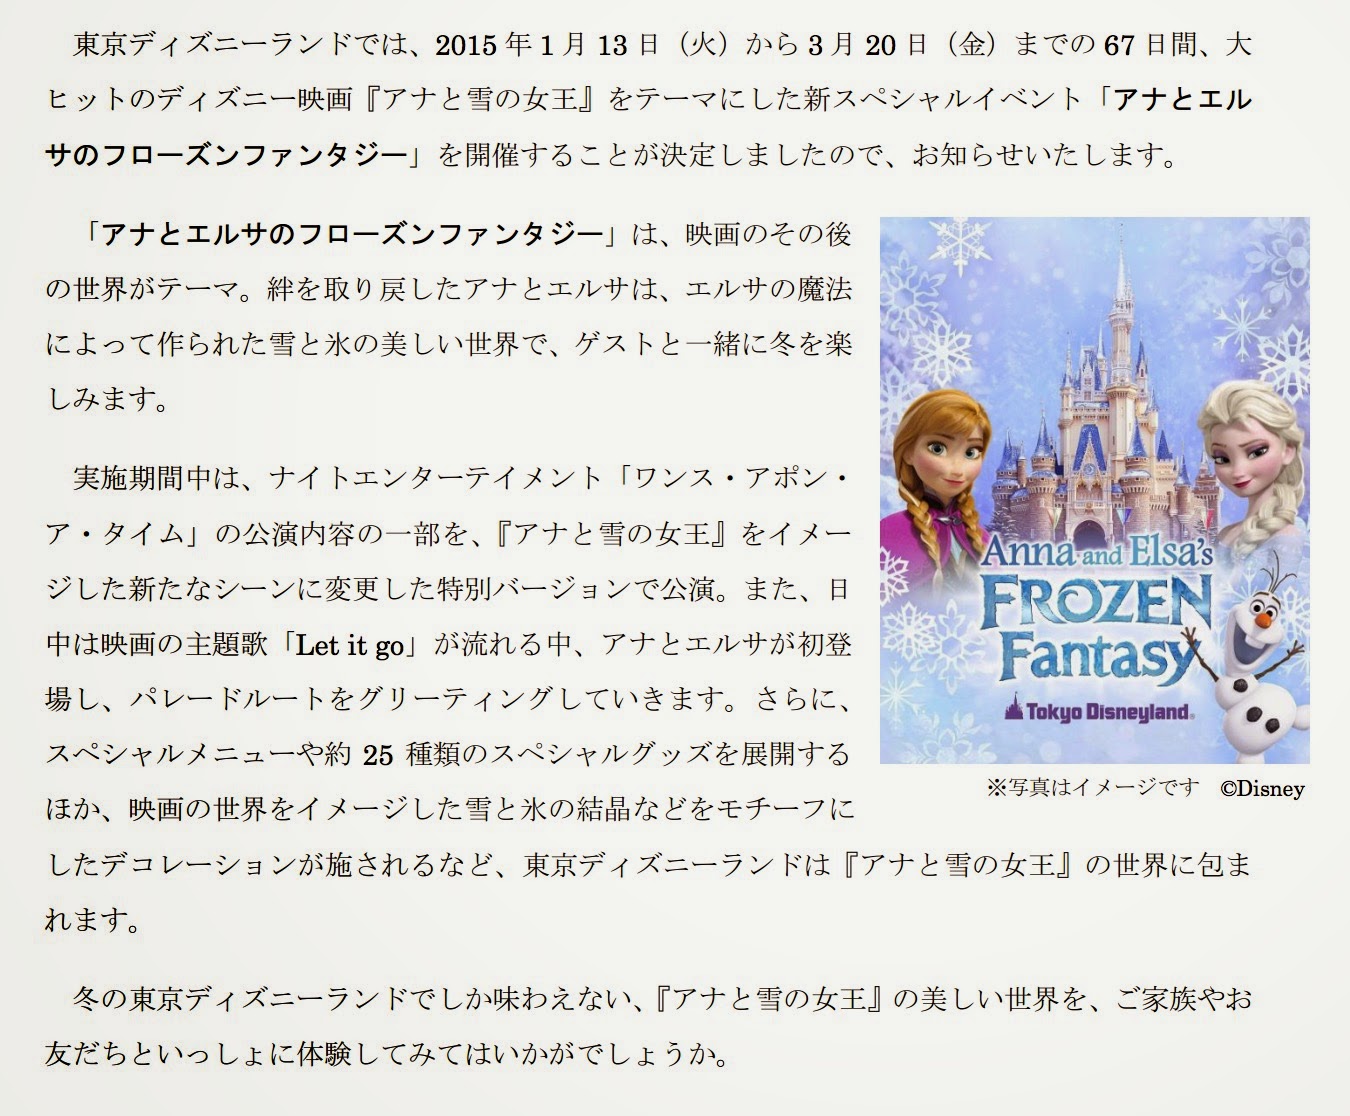 東京ディズニーランドで『アナと雪の女王』をモチーフにしたスペシャルイベント「アナとエルサのフローズンファンタジー」を開催！|Cinema A